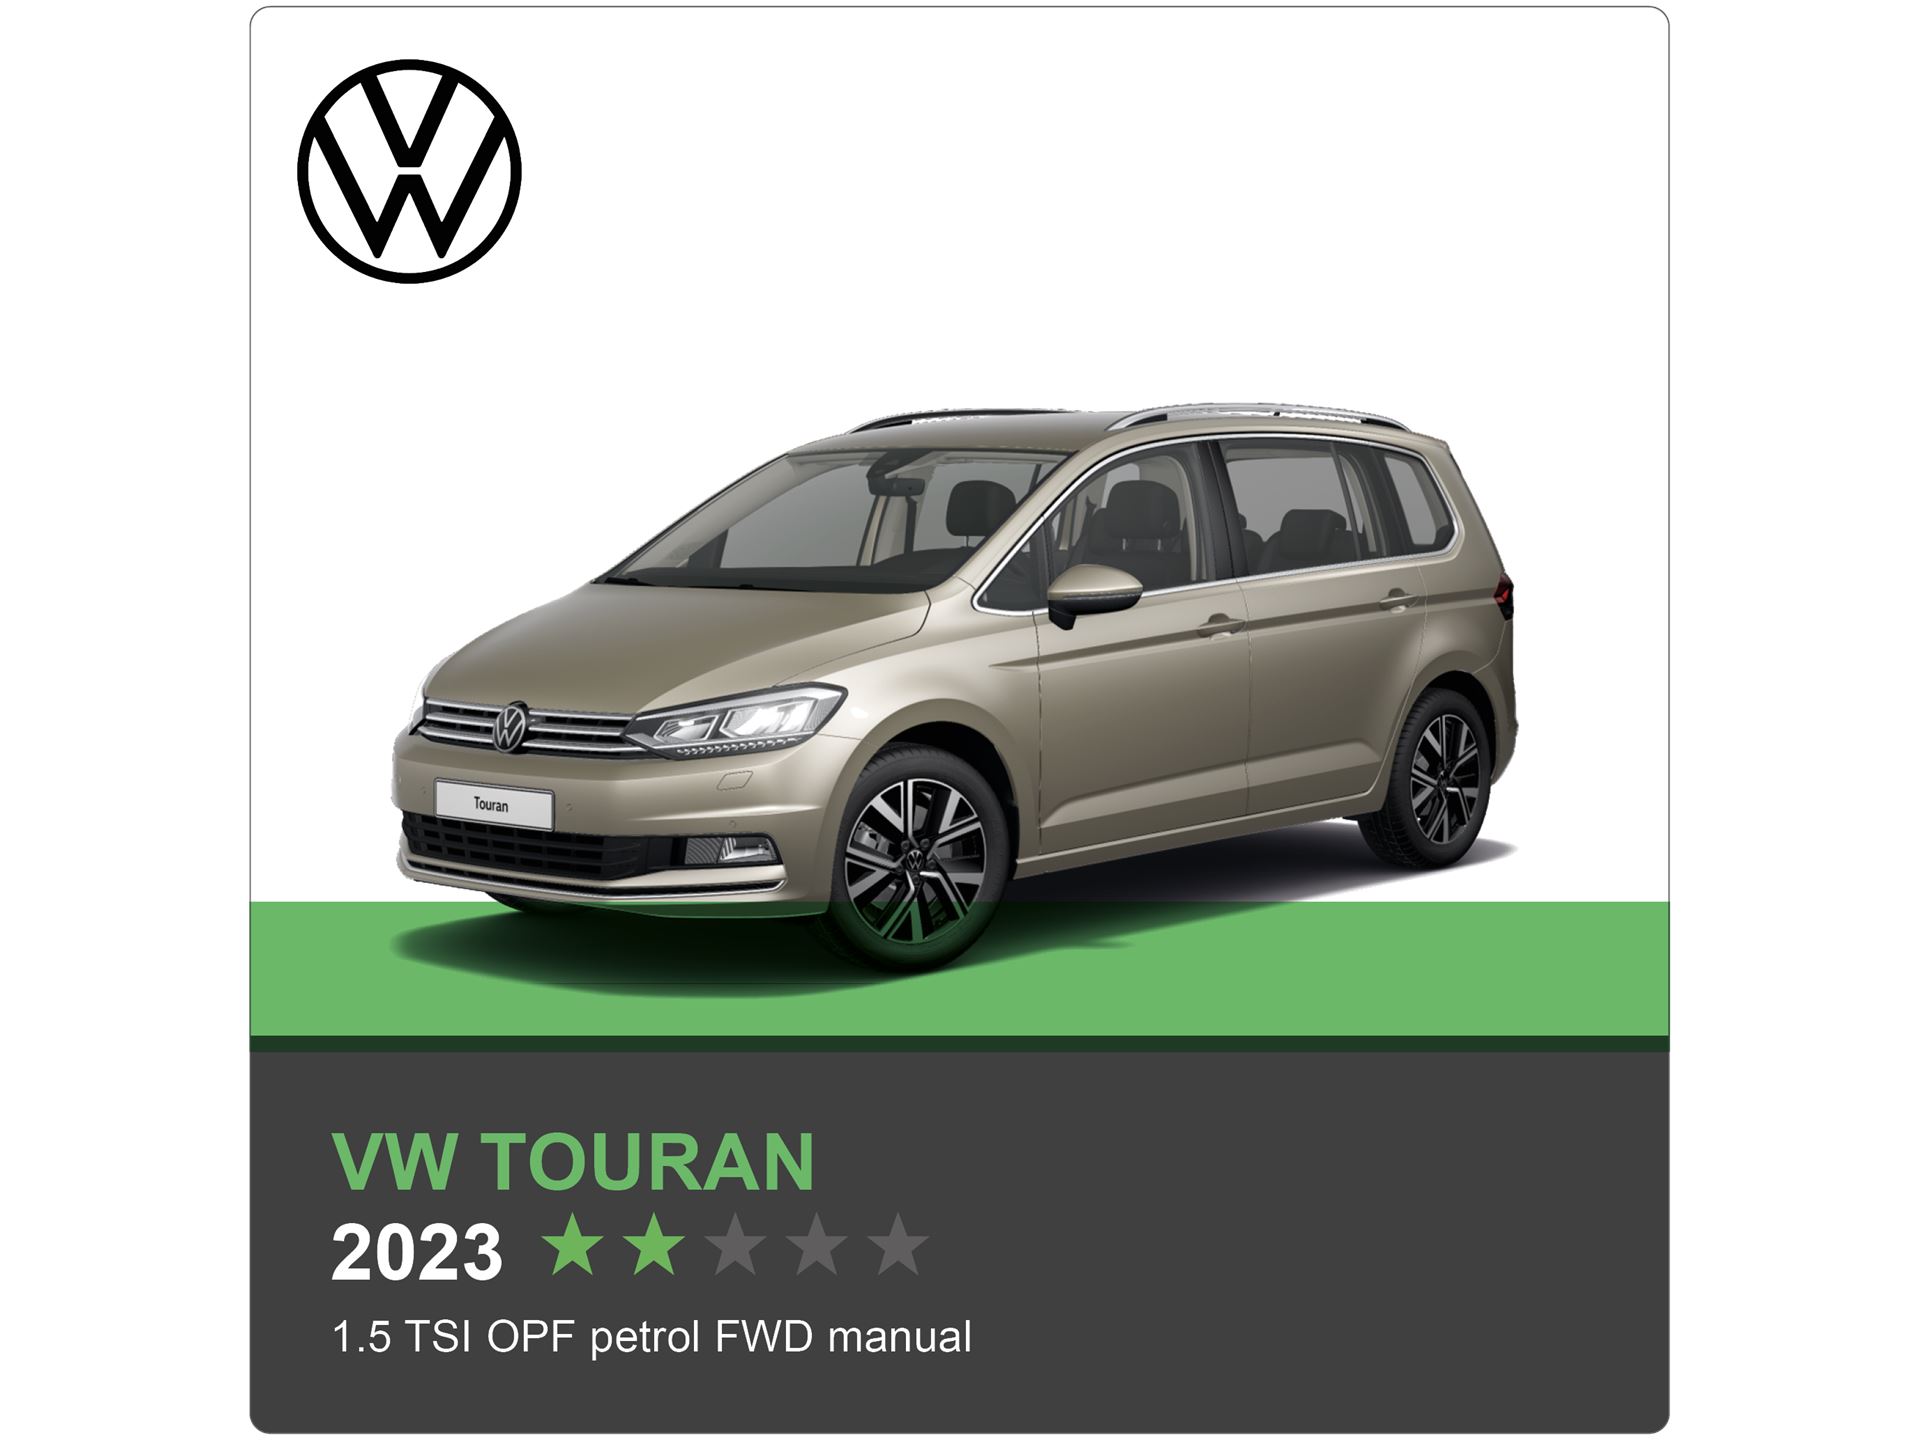 VW Touran Green NCAP results 2023